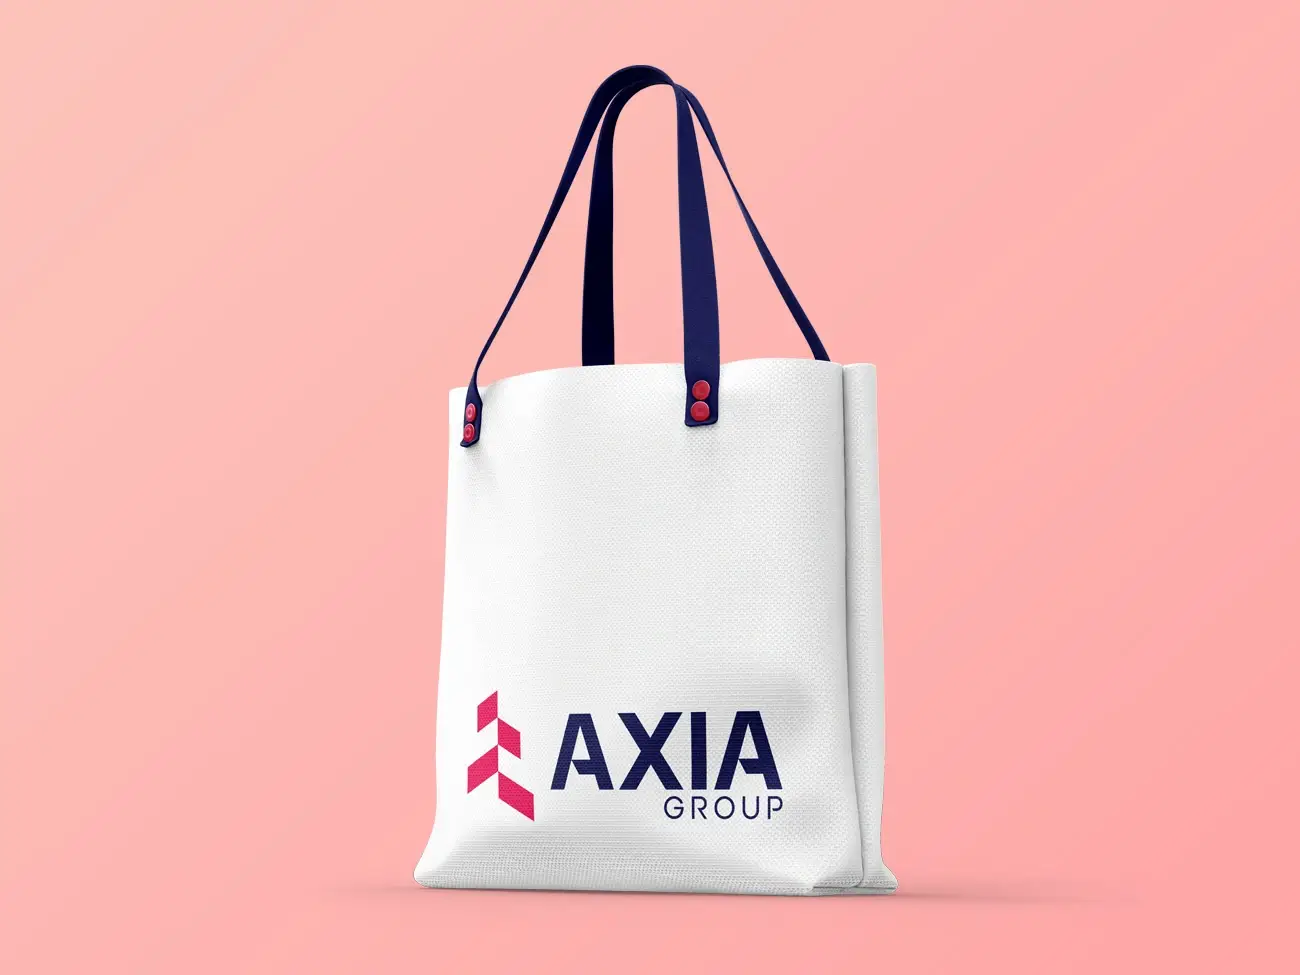 Axia Group firmalogo design på indkøbsnet